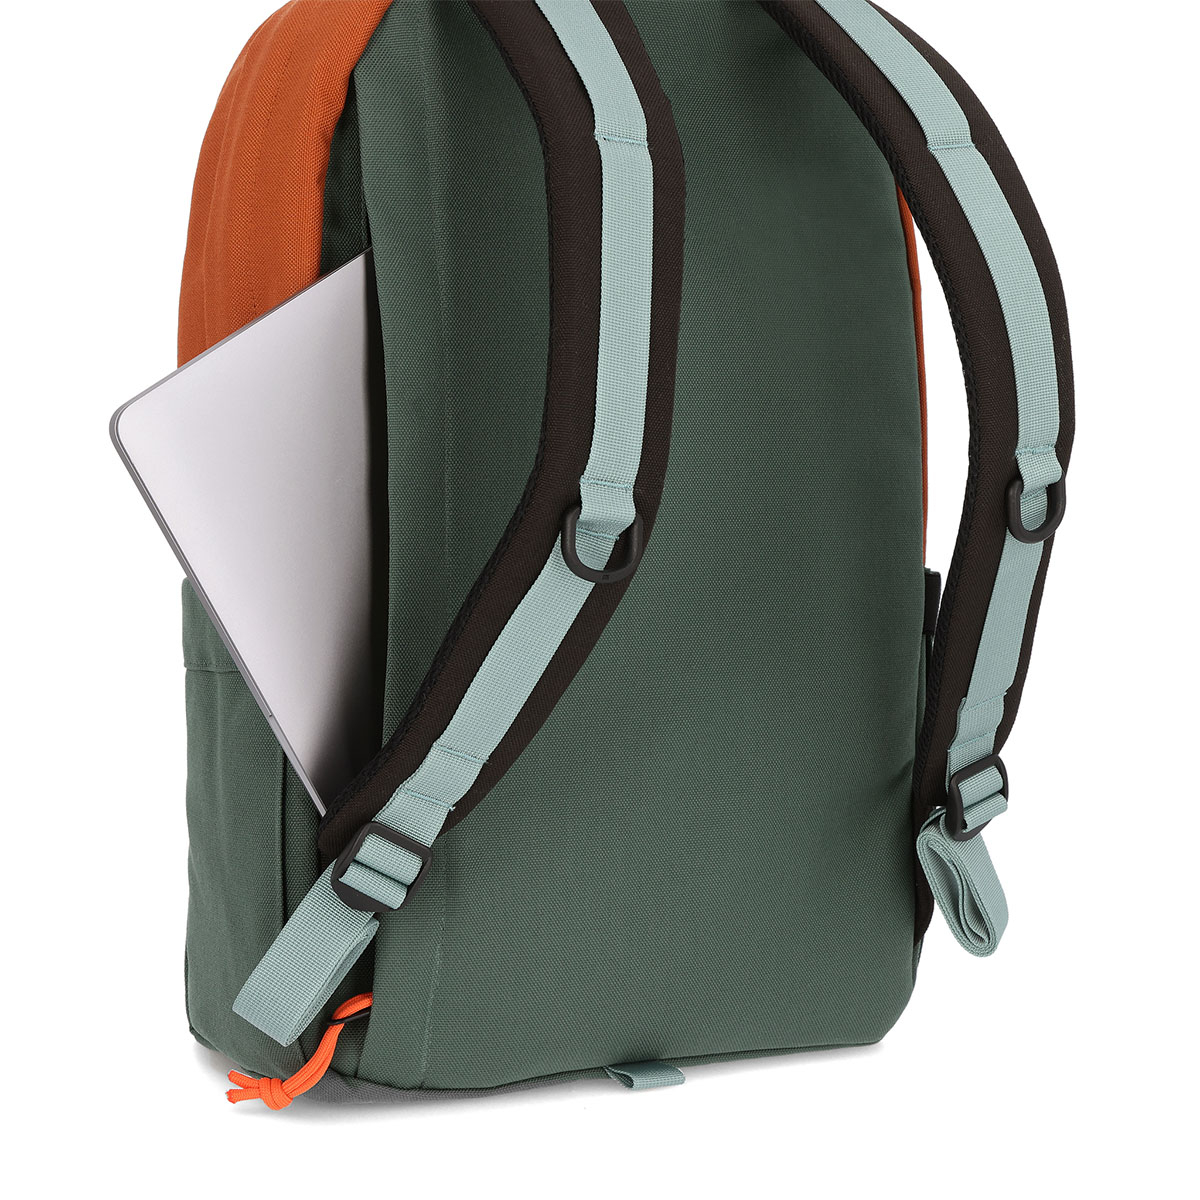 Topo Designs Daypack Classic Khaki/Forest/Clay, der ideale Rucksack für den täglichen Gebrauch